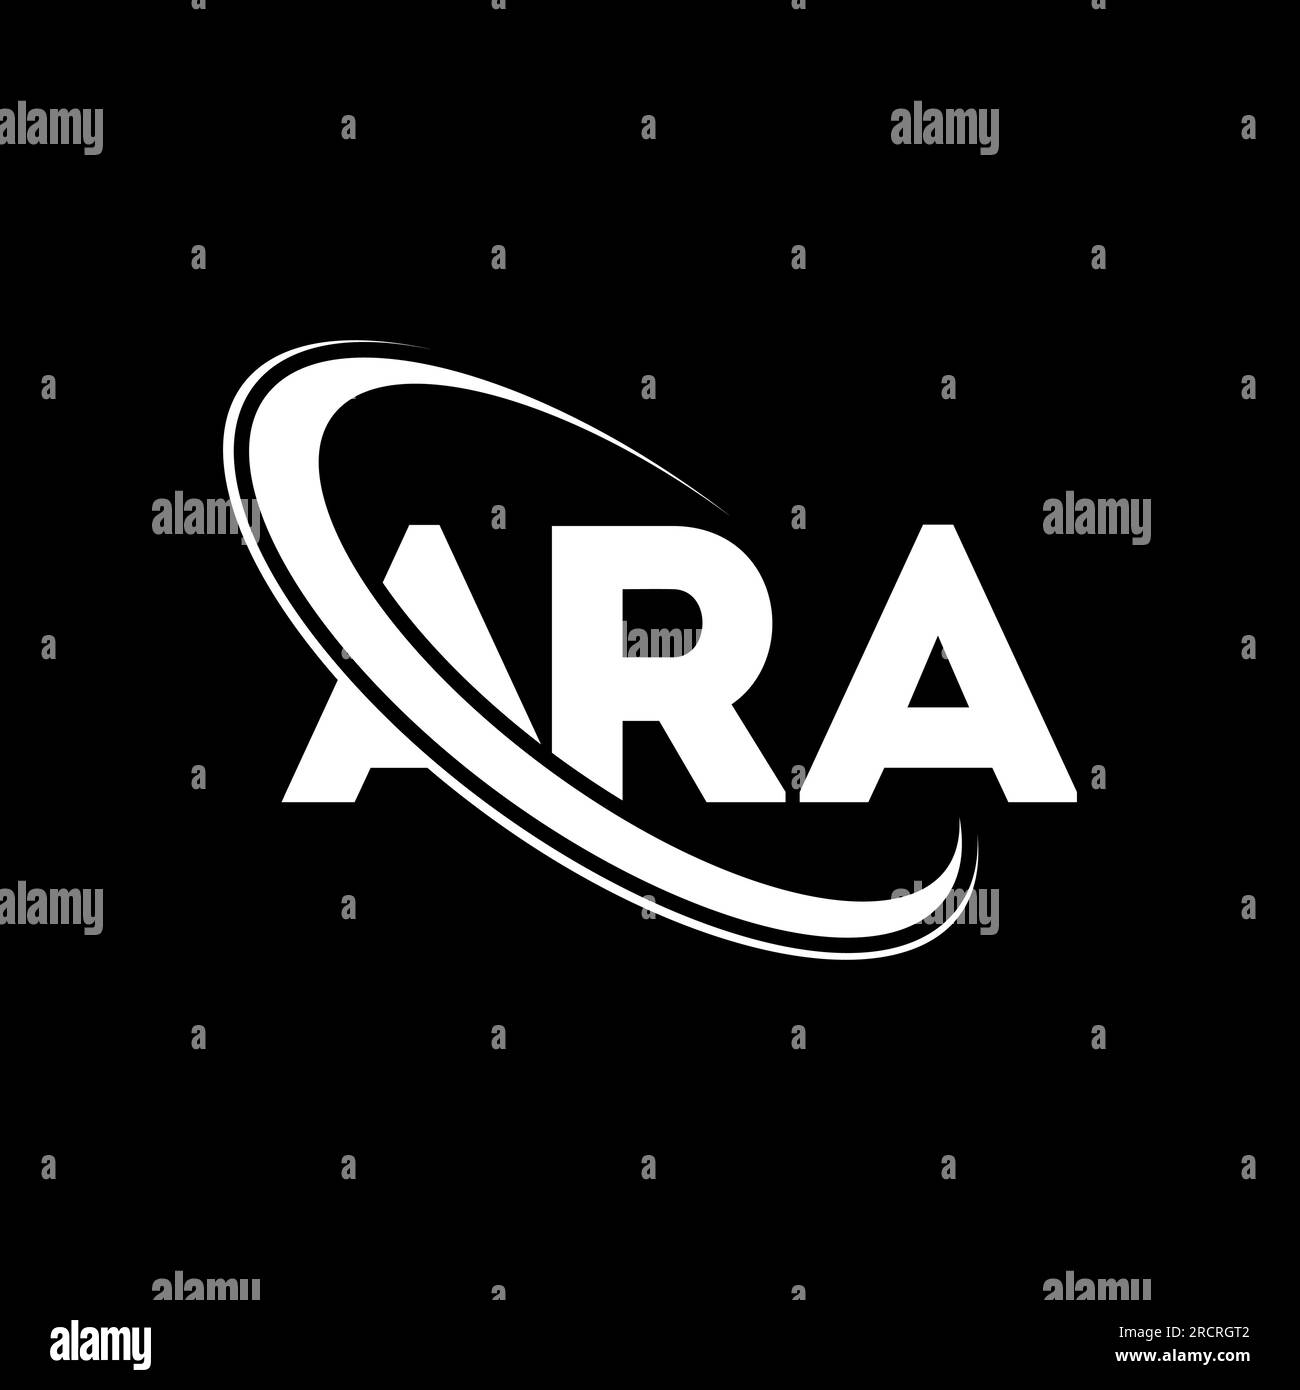 ARA-Logo. ARA-Brief. LOGO mit ARA-Buchstaben. Initialen ARA-Logo, verbunden mit einem Kreis und einem Monogramm-Logo in Großbuchstaben. ARA-Typografie für Technologie, Geschäfte Stock Vektor